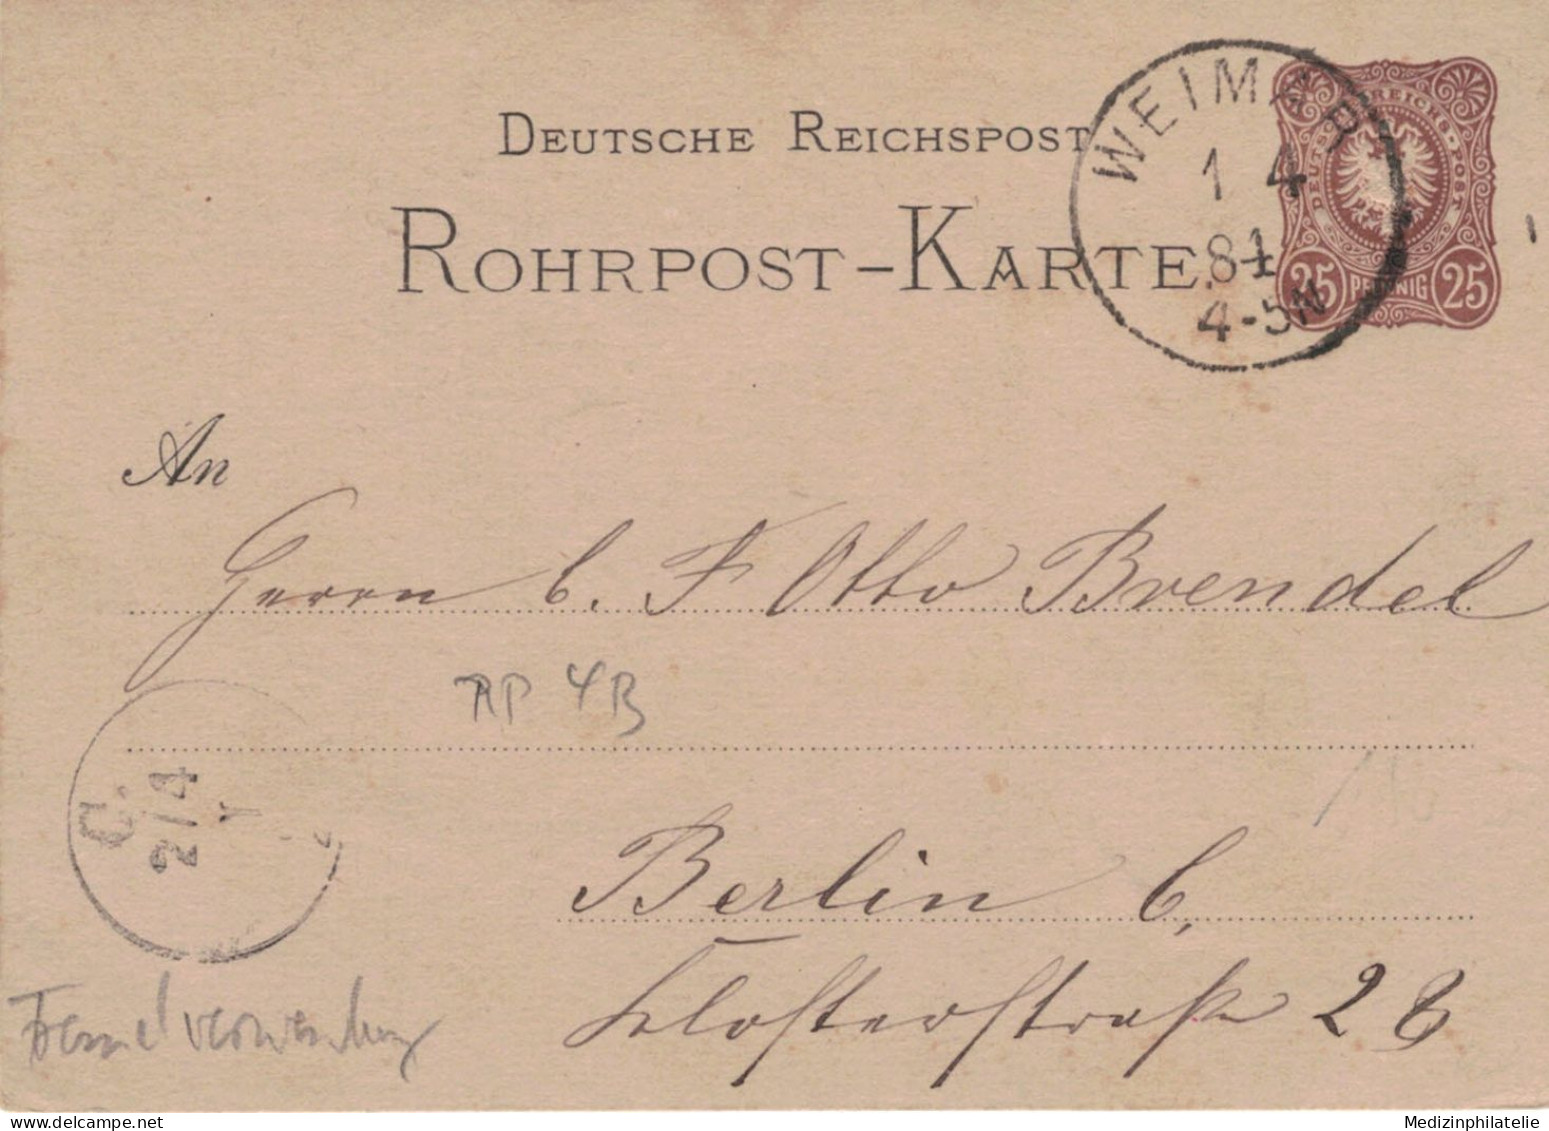 Rohrpost-Karte 25 Pf. Adler In Ellipse - 4 B - Weimar 1884 > Berlin - Fremdverwendung - Postkarten